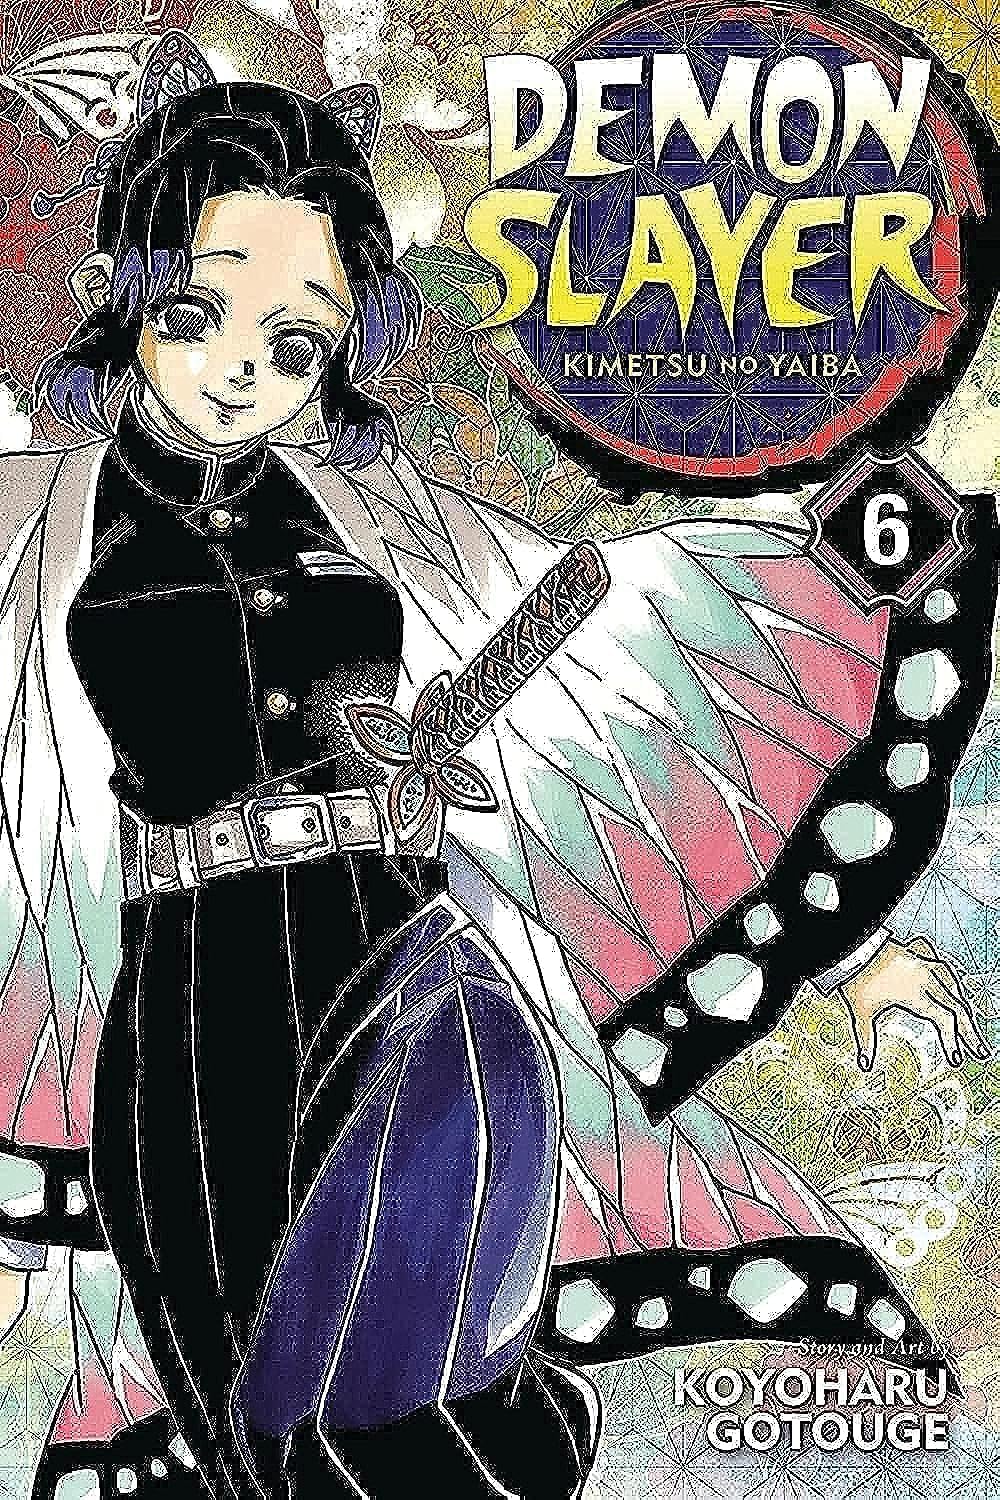 Demon Slayer: Kimetsu no Yaiba, Vol. 6 (6)